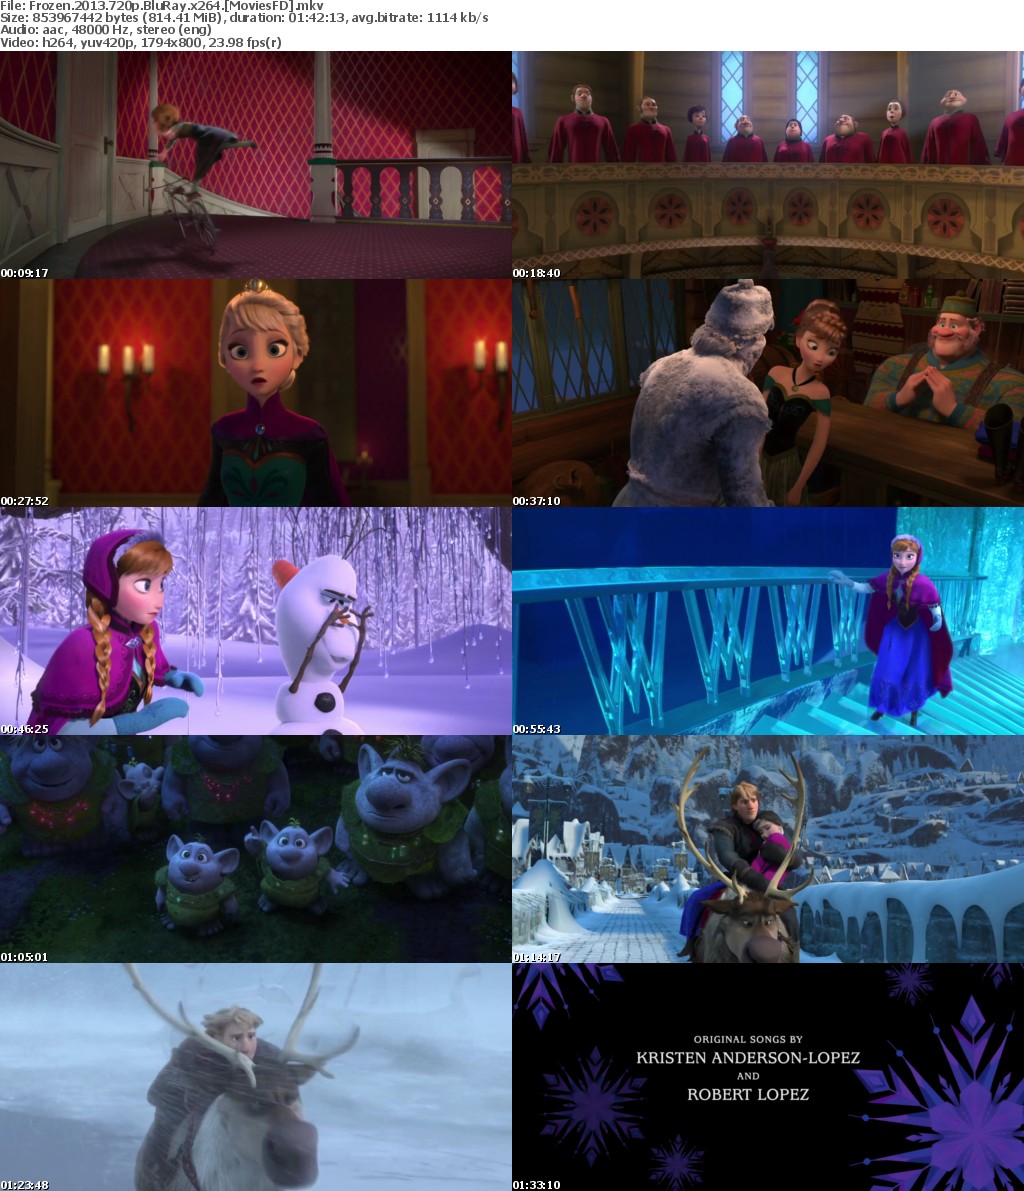 Frozen (2013) 720p BluRay x264 - MoviesFD